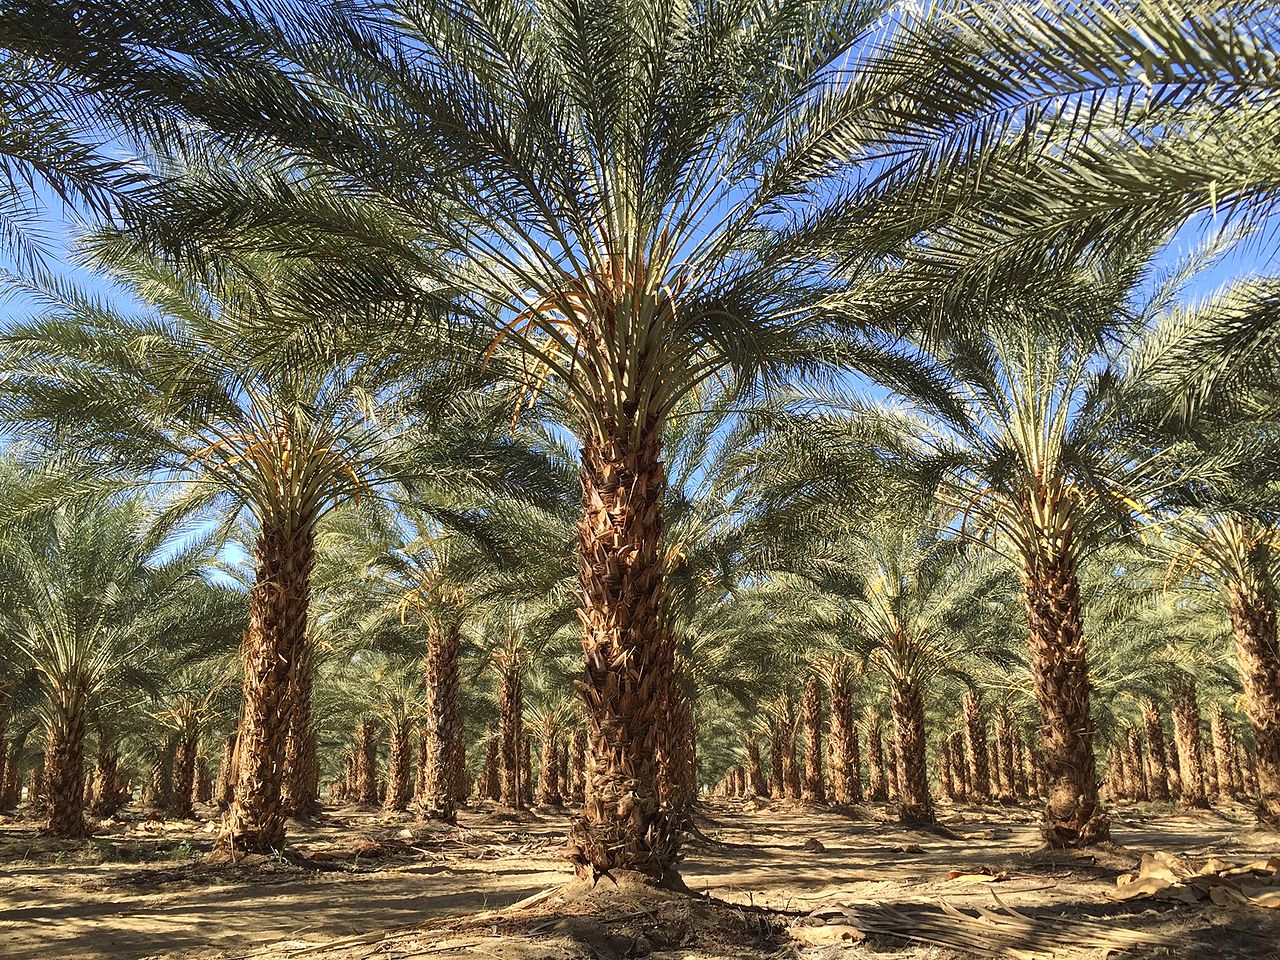 Vista de palmeras datileras